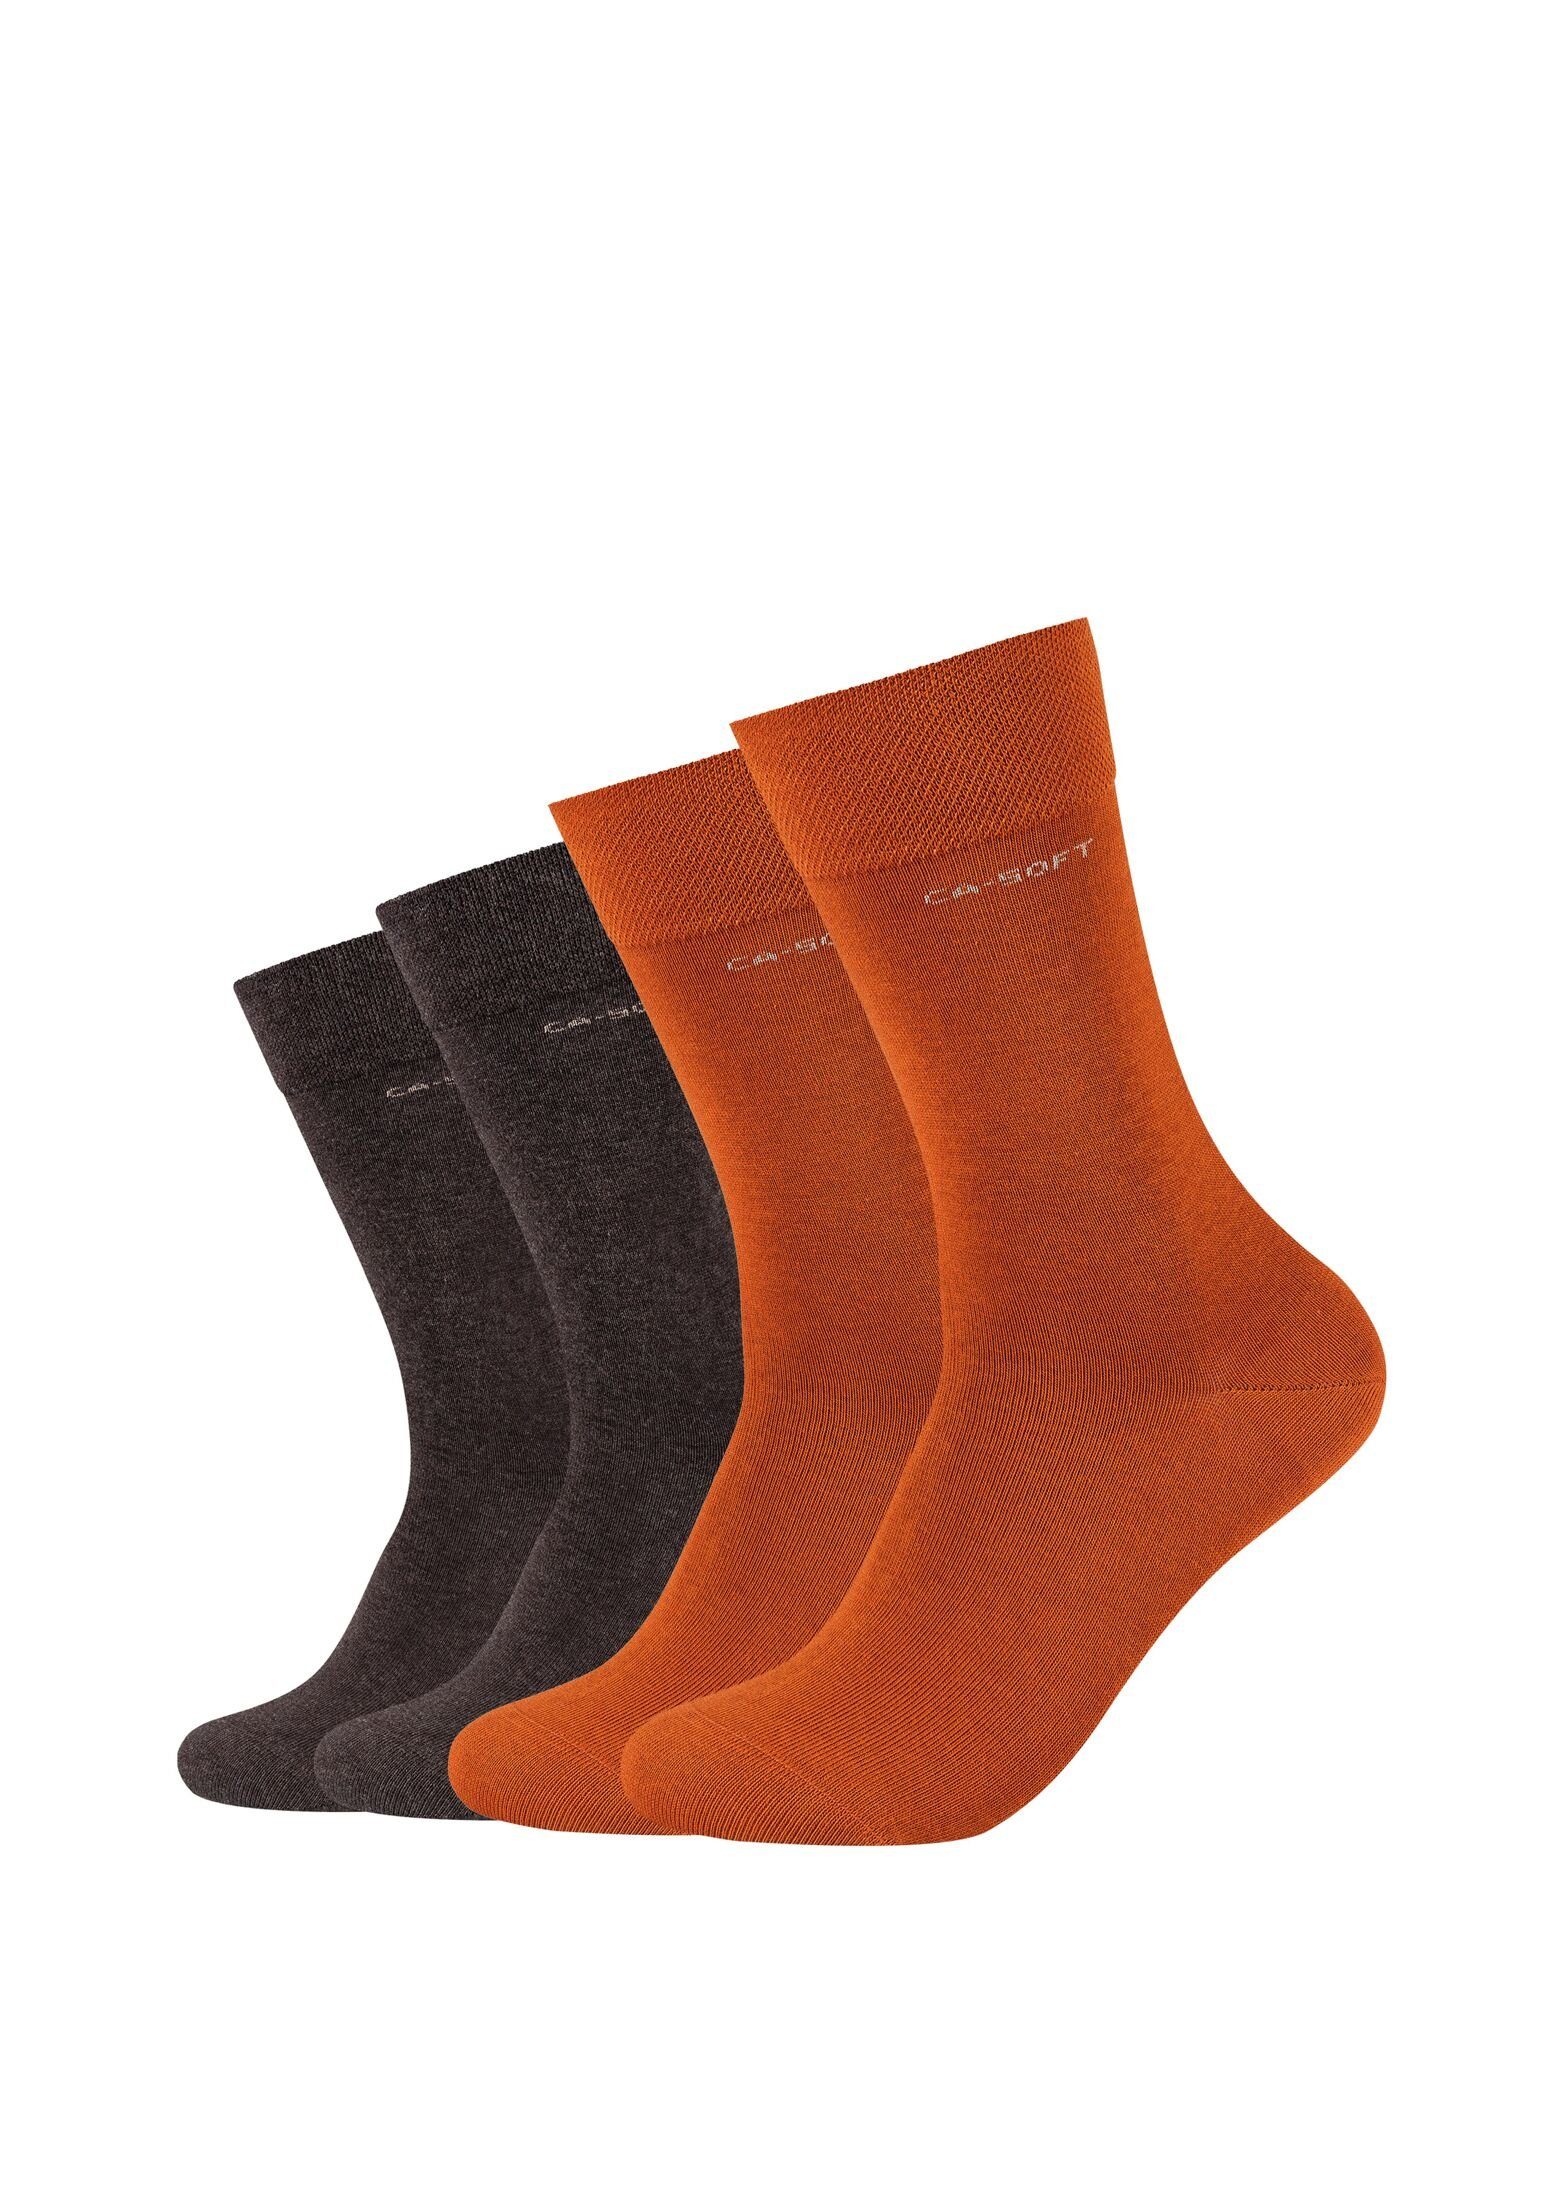 Herren Bequem Camano Socken für Komfortbund Socken Businesssocken Damen und rust